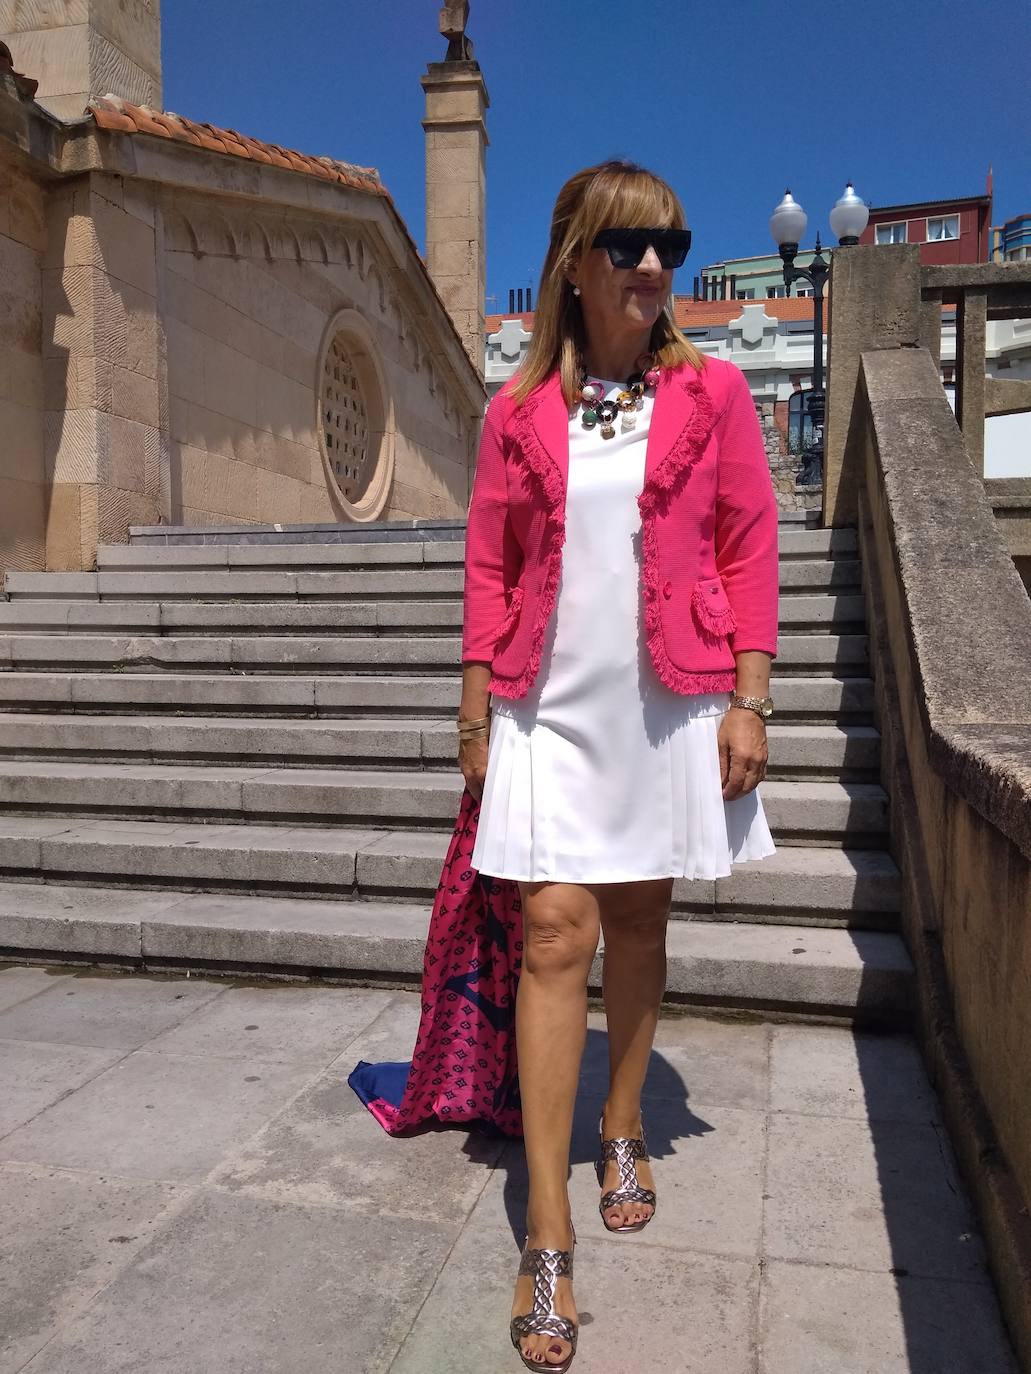 Asun Prieto (@asunportu) se decidió por un look en blanco. Su estilismo suma un precioso vestido y su chaqueta en rosa, reforzado por los complementos… El pañuelo y las sandalias, además del precioso collar de piedras. Un estilo chic y cargado de luz de verano. 